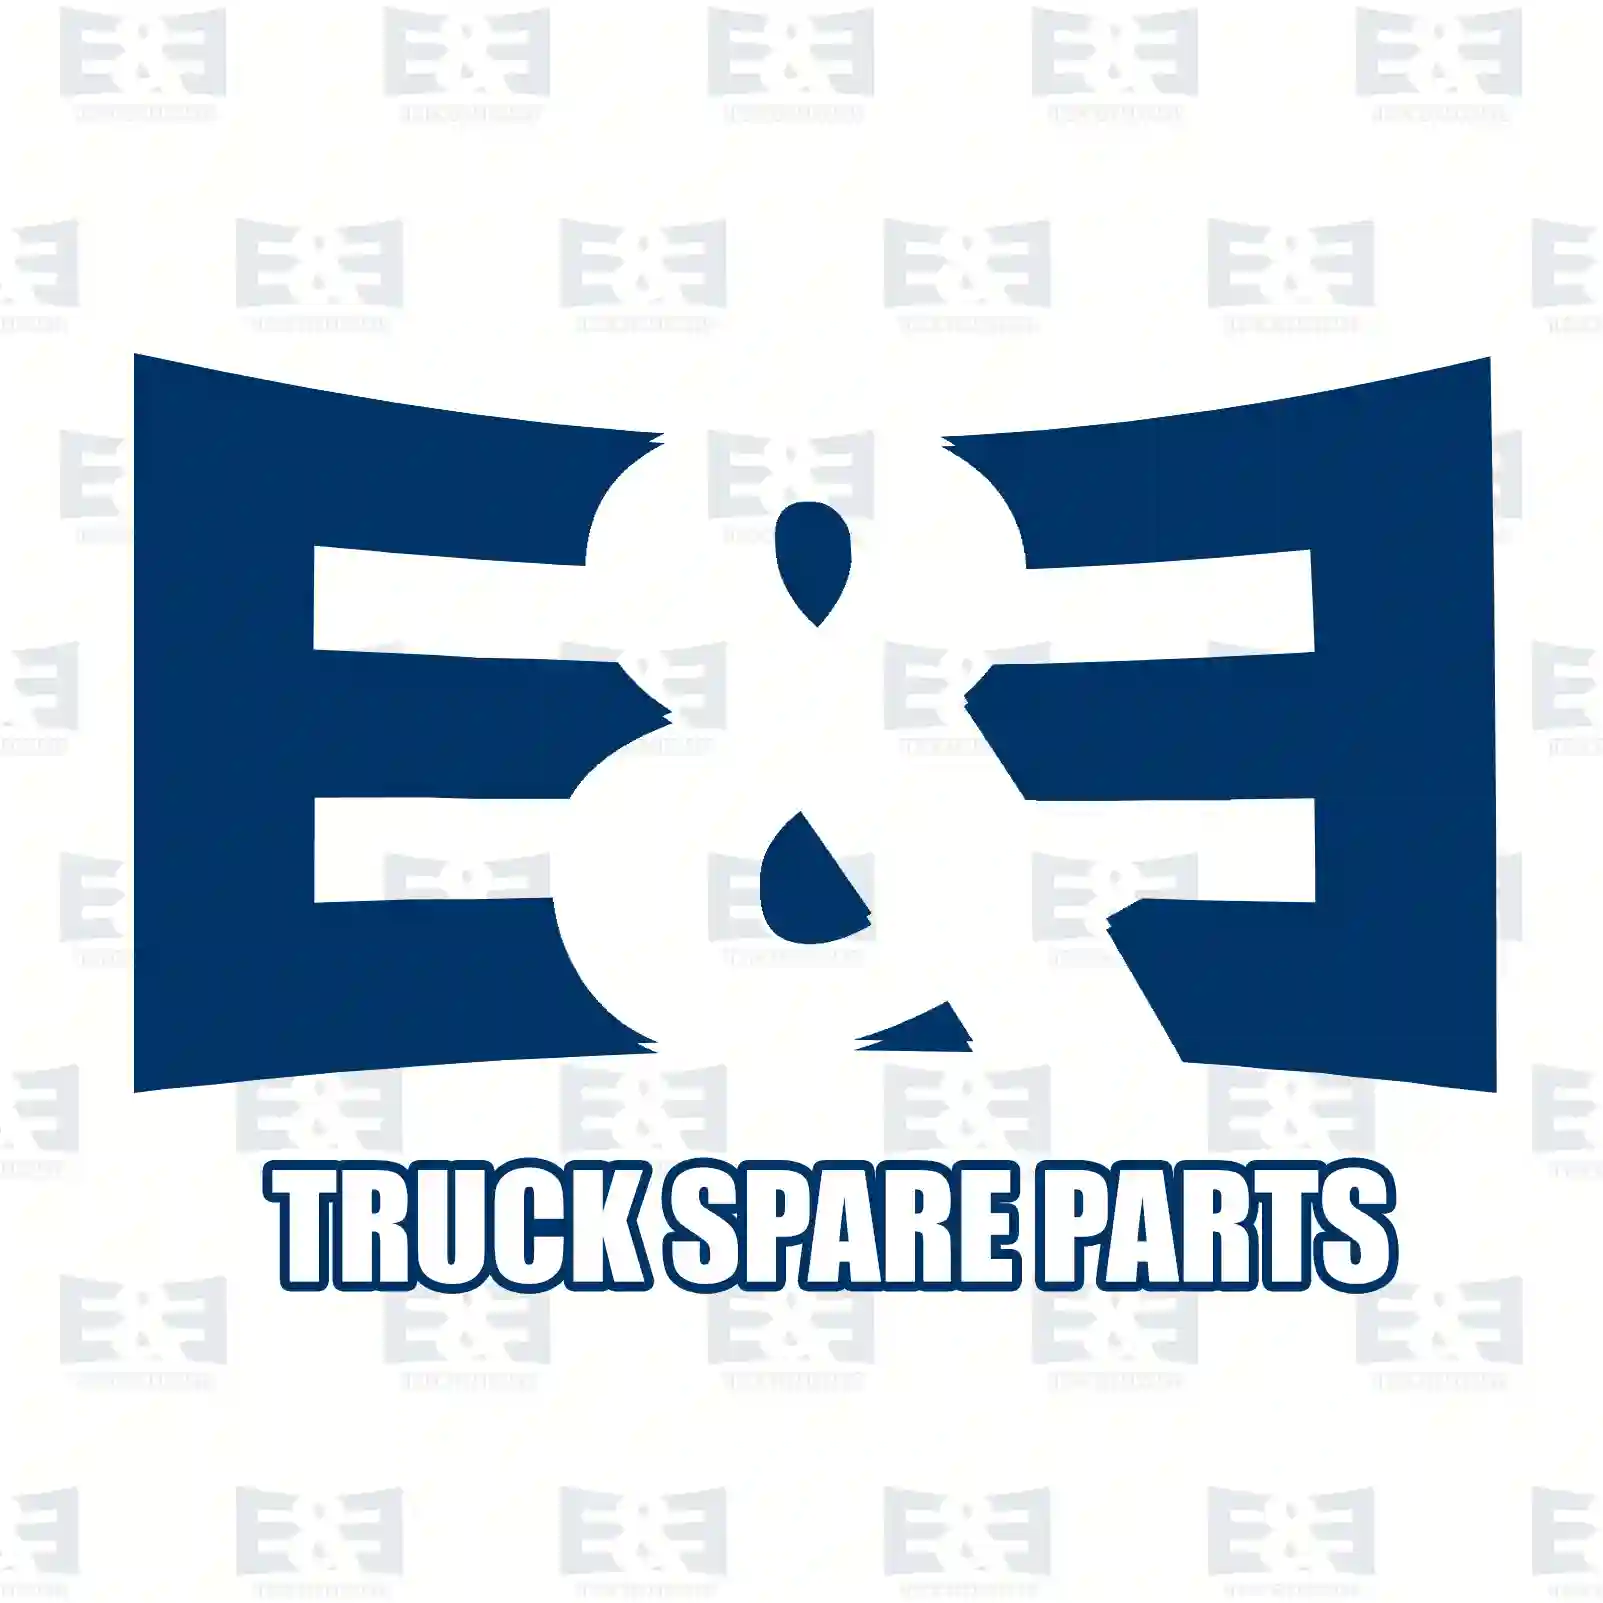 Brake disc, 2E2297523, 02996353, 504136353, 5010216437, , , ||  2E2297523 E&E Truck Spare Parts | Truck Spare Parts, Auotomotive Spare Parts Brake disc, 2E2297523, 02996353, 504136353, 5010216437, , , ||  2E2297523 E&E Truck Spare Parts | Truck Spare Parts, Auotomotive Spare Parts